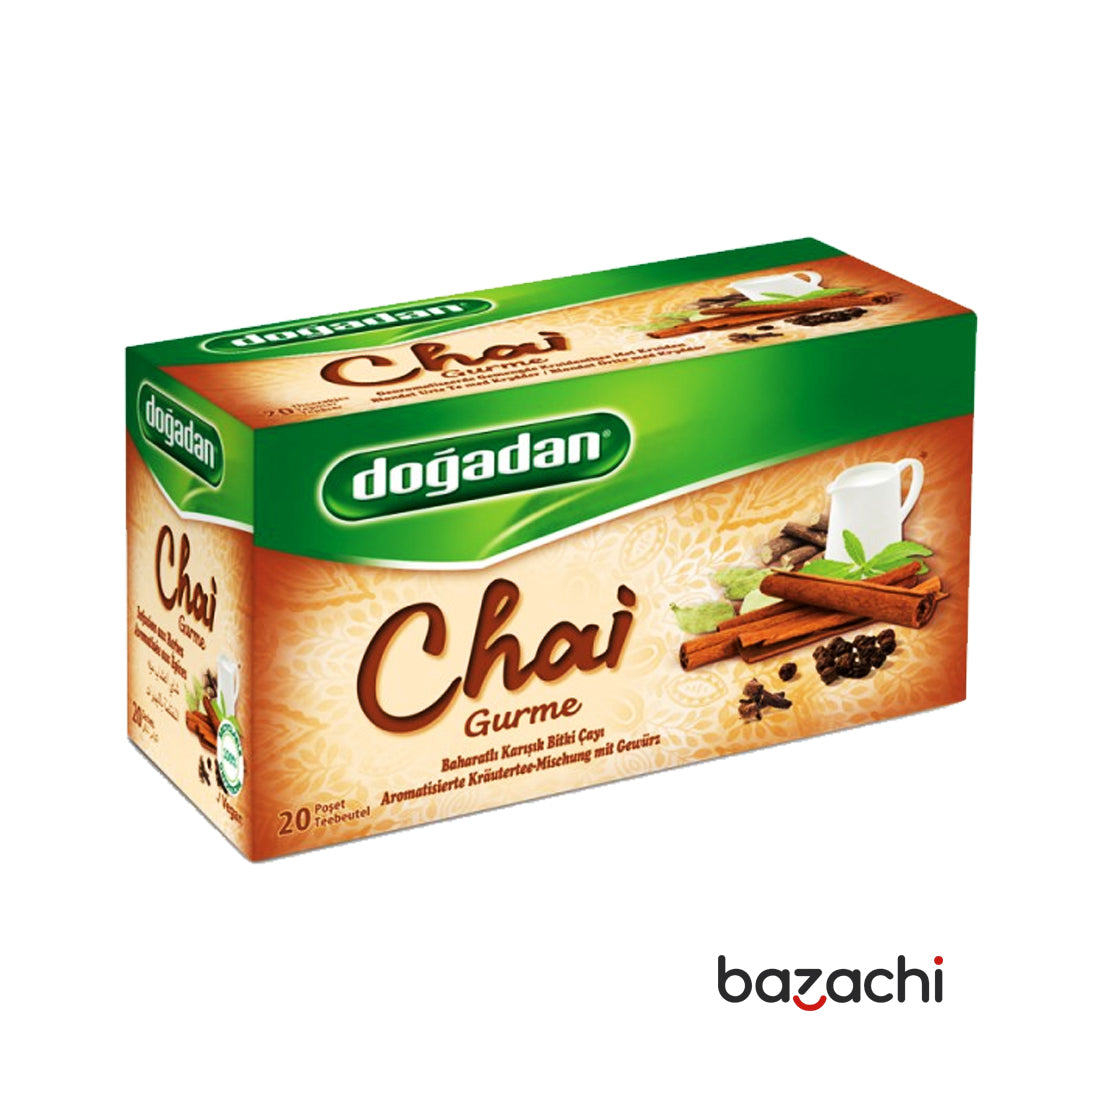 Dogadan Chai Gurme Spicy Mixed Herbal Tea 20 Tea Bags